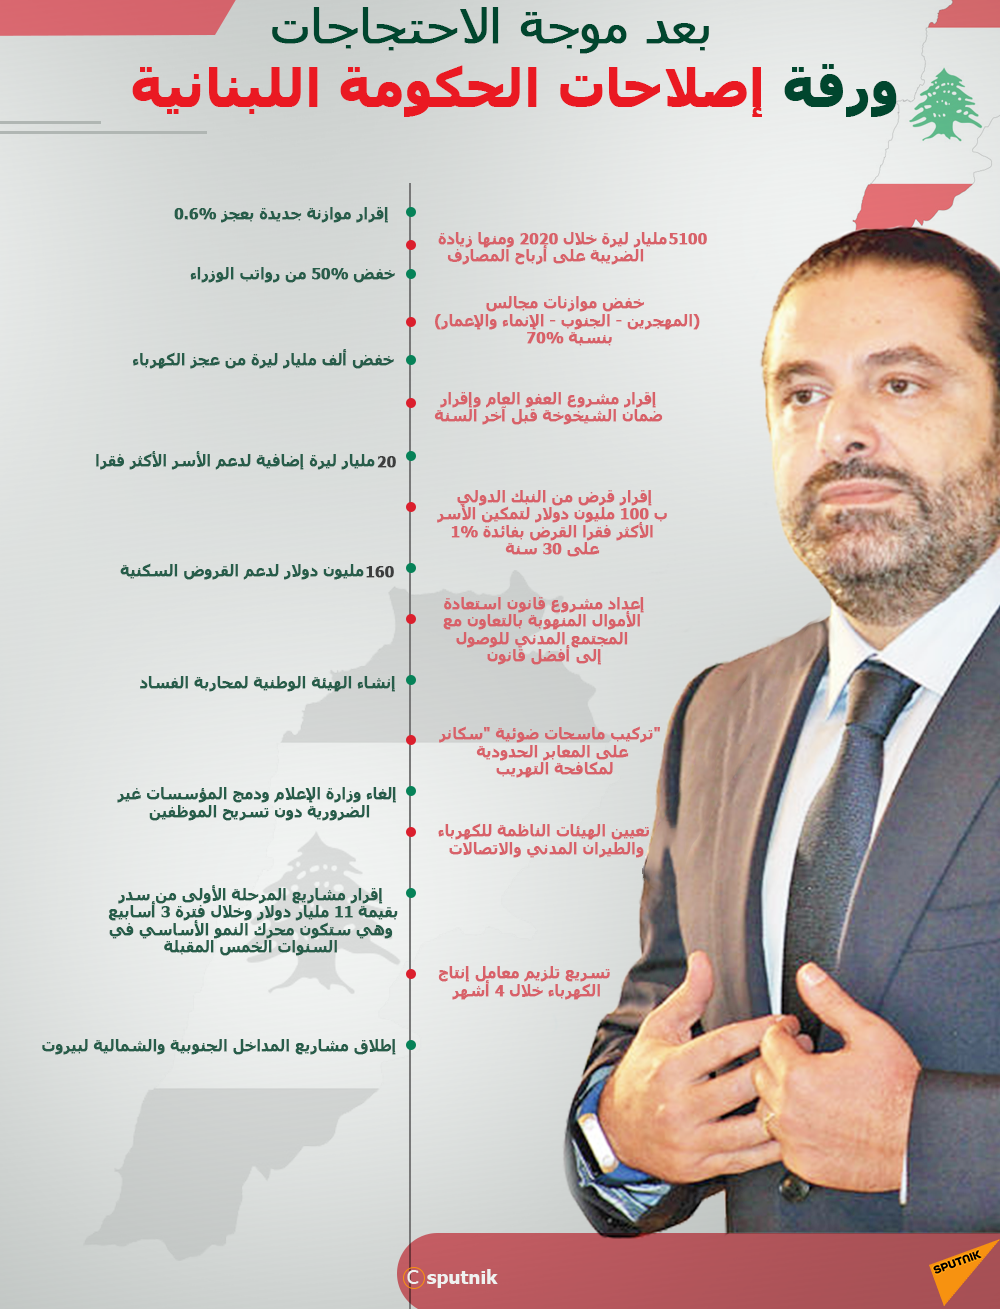 رئيس الحكومة اللبنانية يعلن رسميا موافقة حكومتة على حزمة الإصلاحات والميزانية/ فيديو